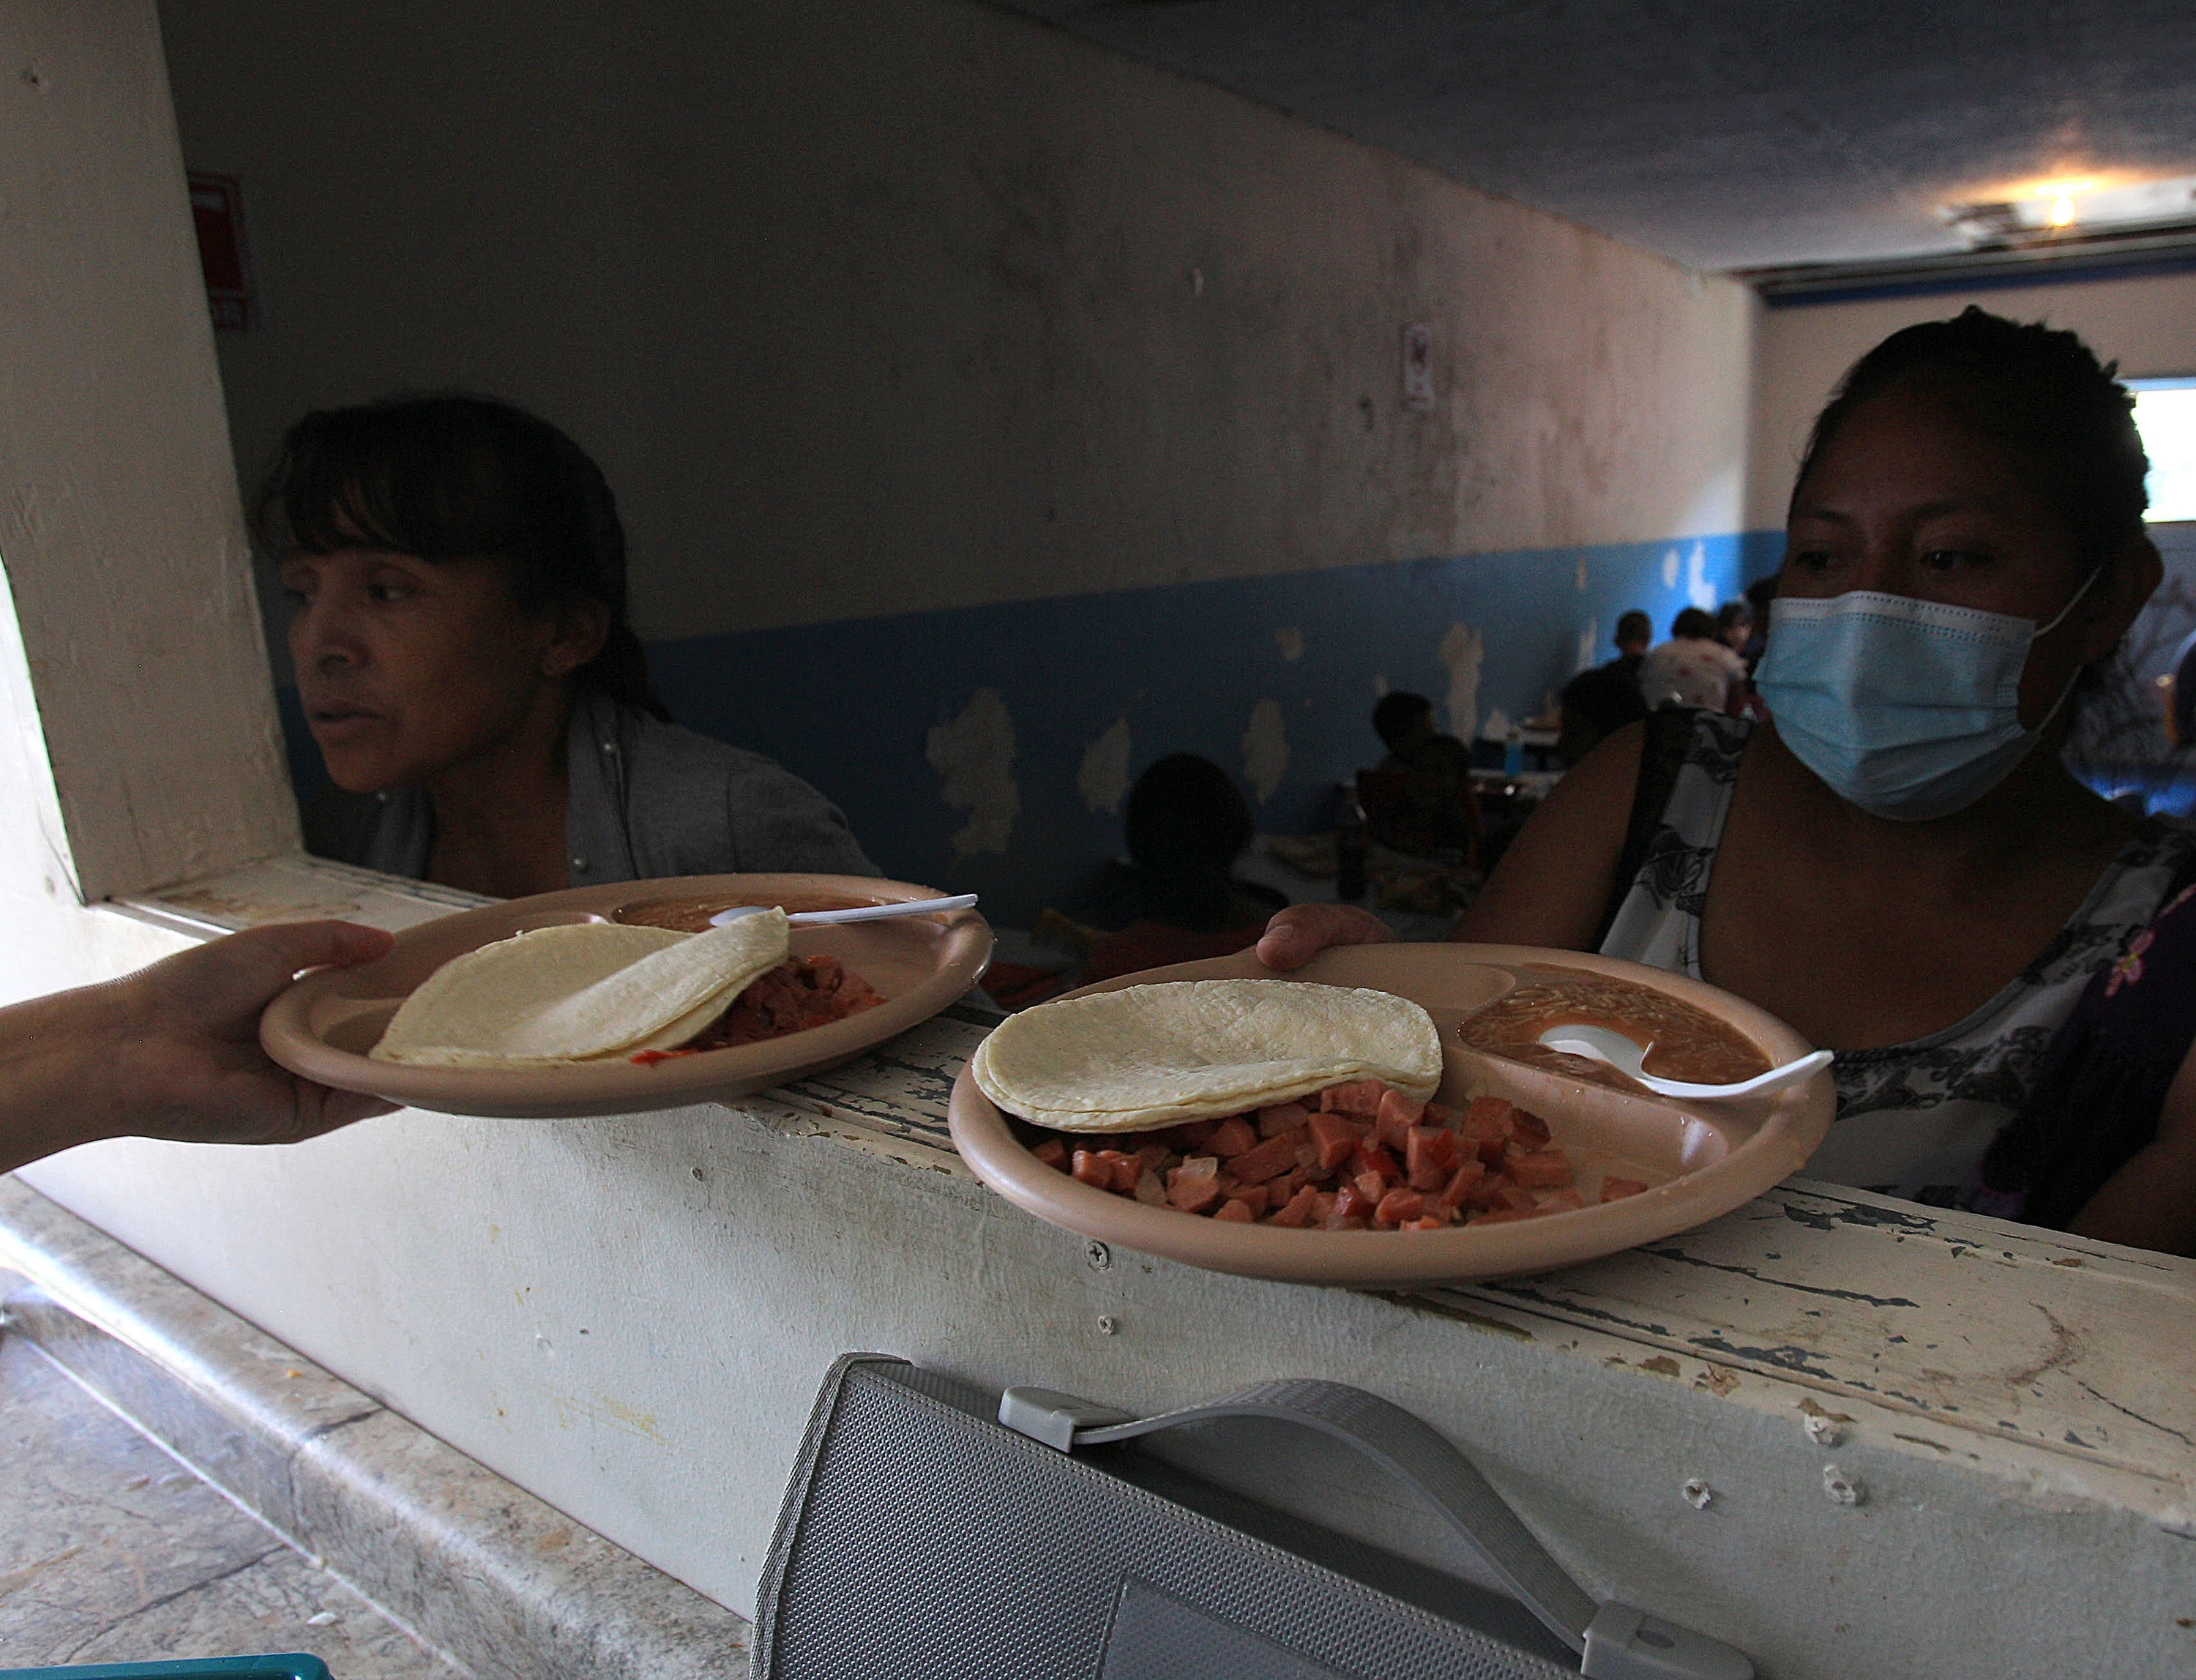 Migrantes centroamericanos contagiados en su mayoría por covid-19 reciben alimentos en el comedor del albergue "Esperanza para todos", en Ciudad Juárez,  Chihuahua, México. (Foto Prensa Libre: EFE)